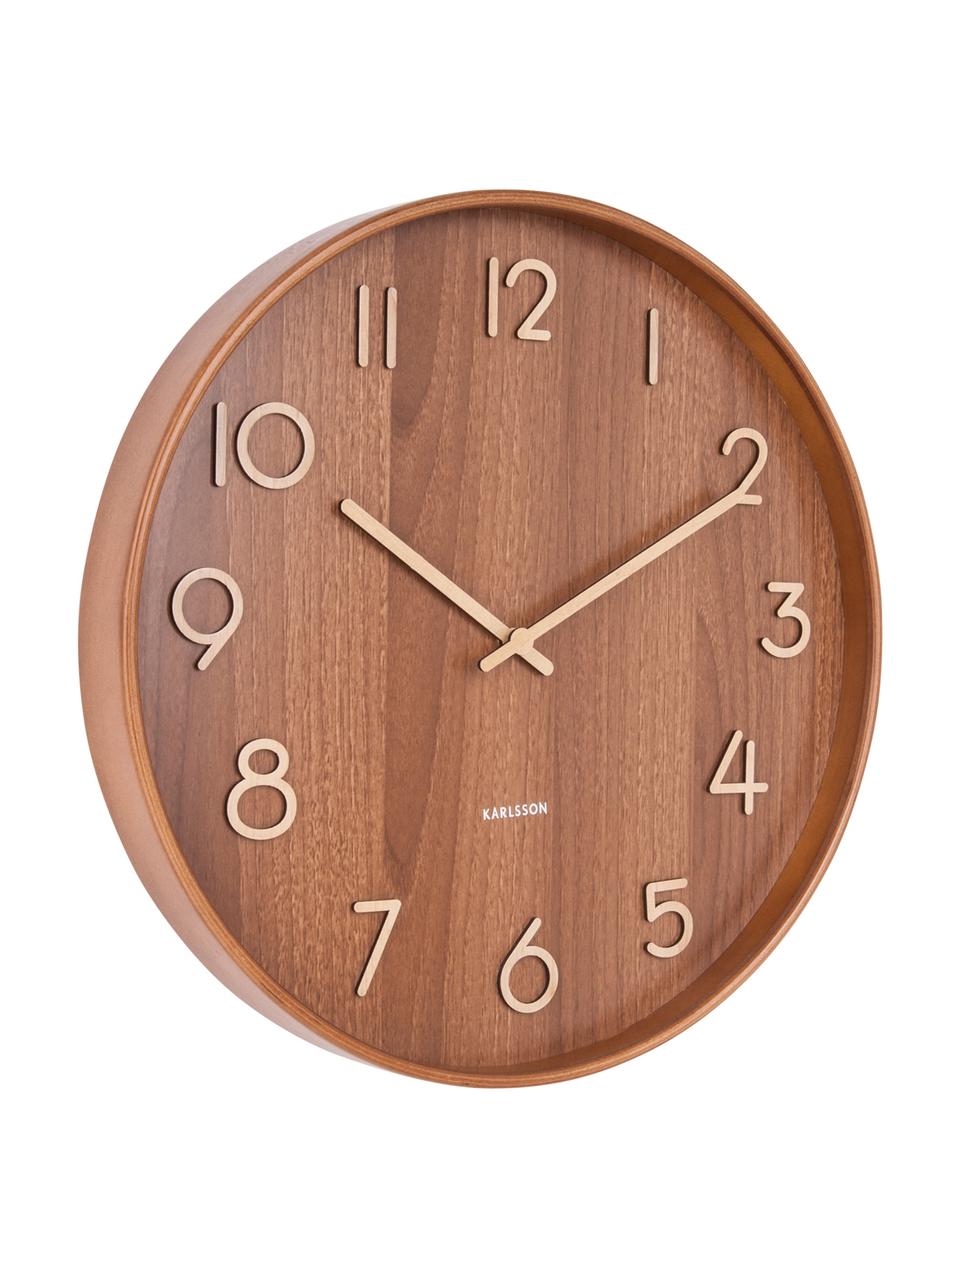 Zegar ścienny Pure, Drewno naturalne, Brązowy, beżowy, Ø 60 cm